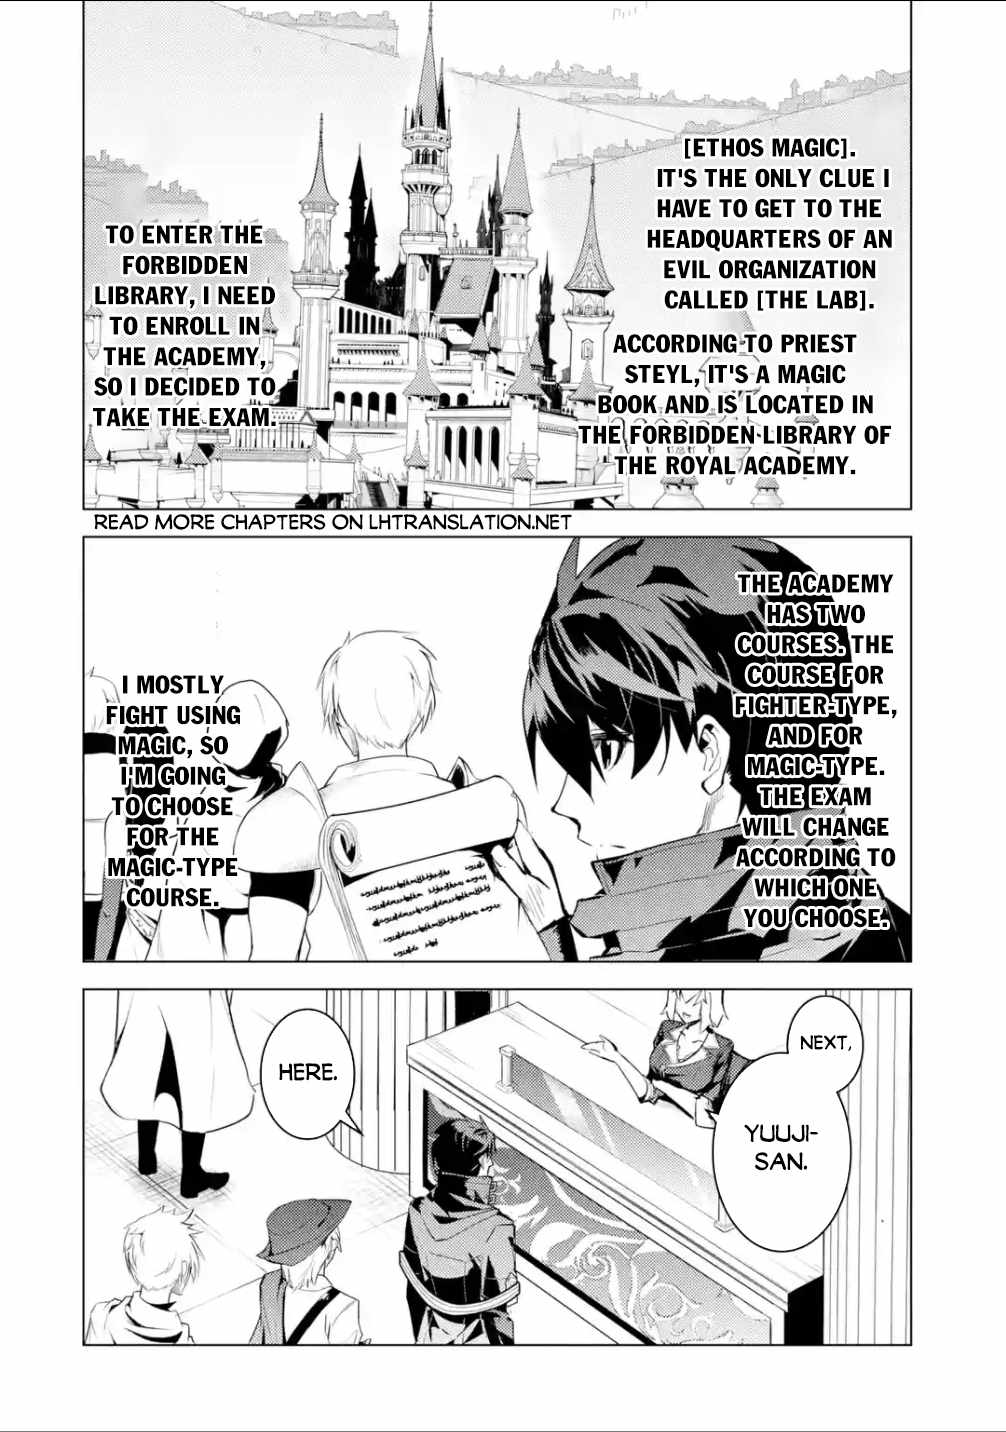 DISC] Tensei Kenja no Isekai Life - Chapter 55.1 : r/manga